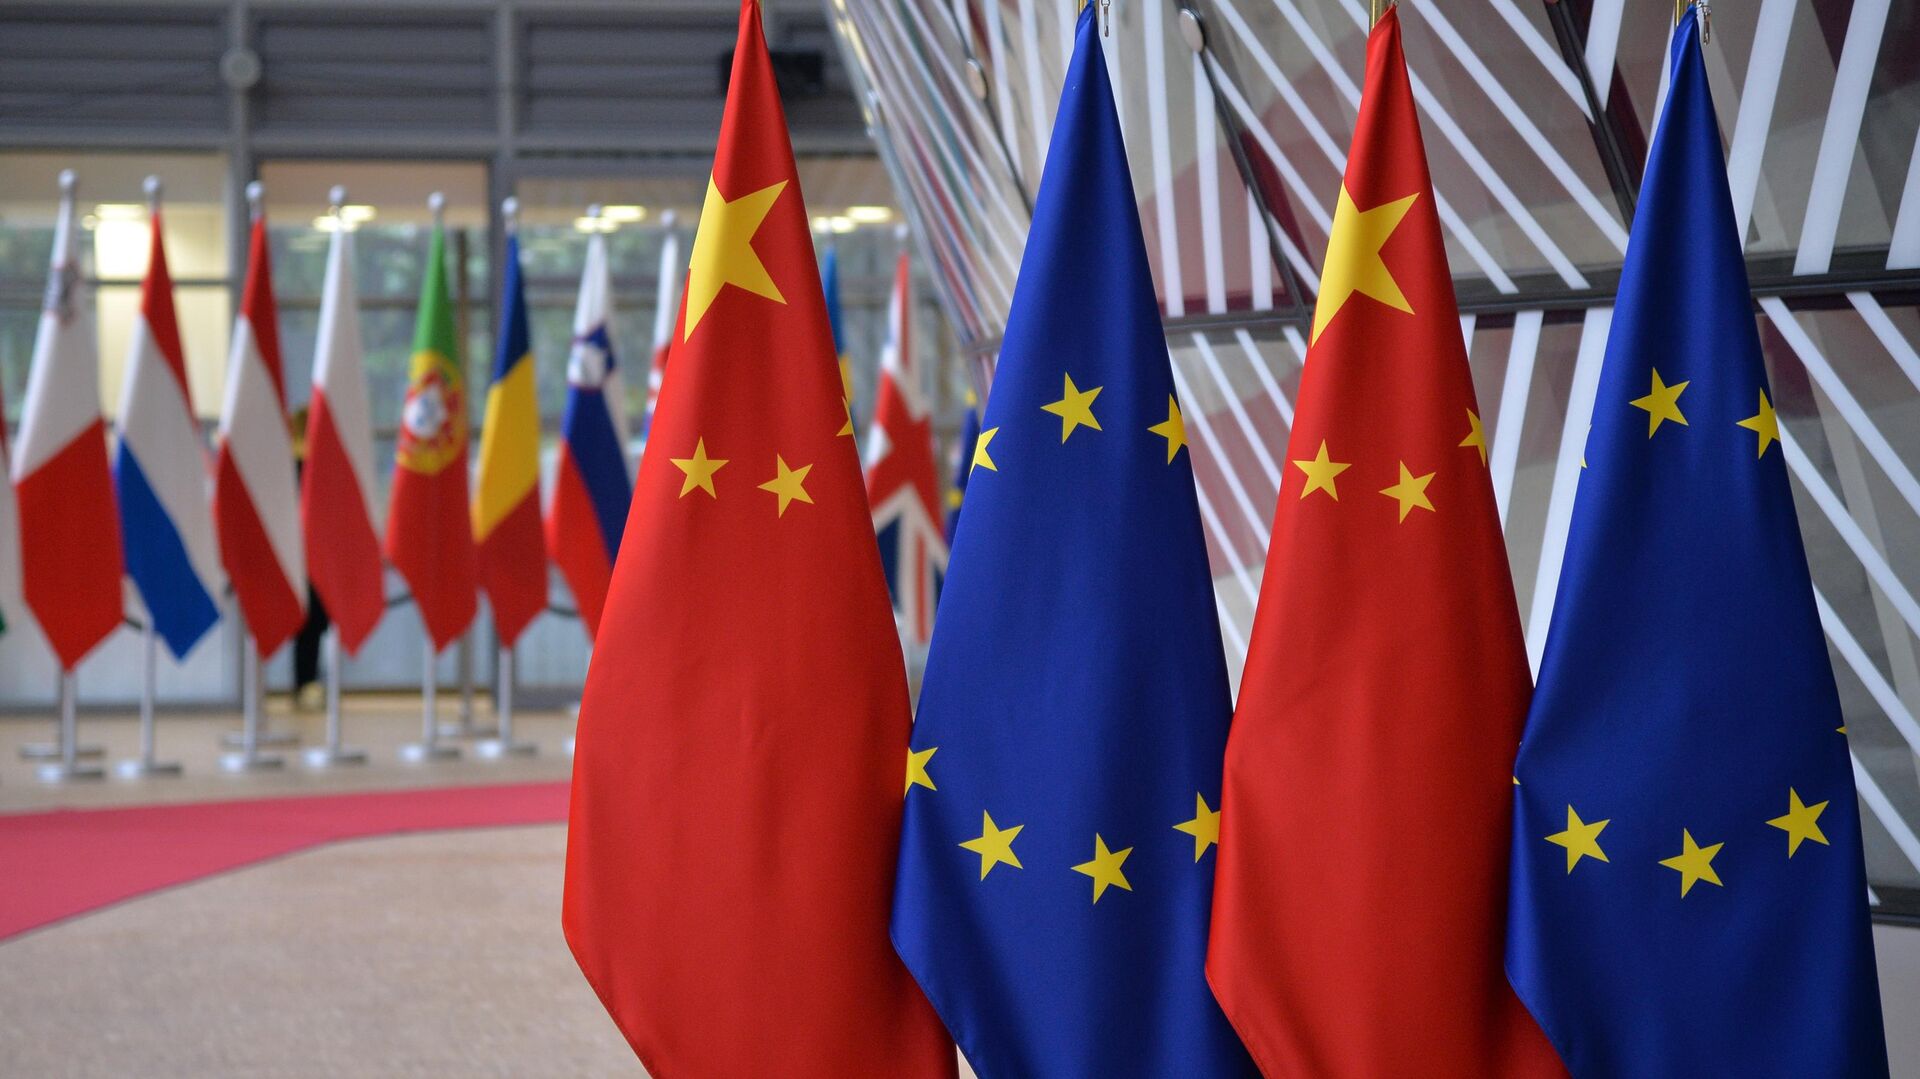 Флаги Европейского союза и государственные флаги КНР на саммите ЕС — КНР в Брюсселе. 9 апеля 2019 - РИА Новости, 1920, 24.06.2023